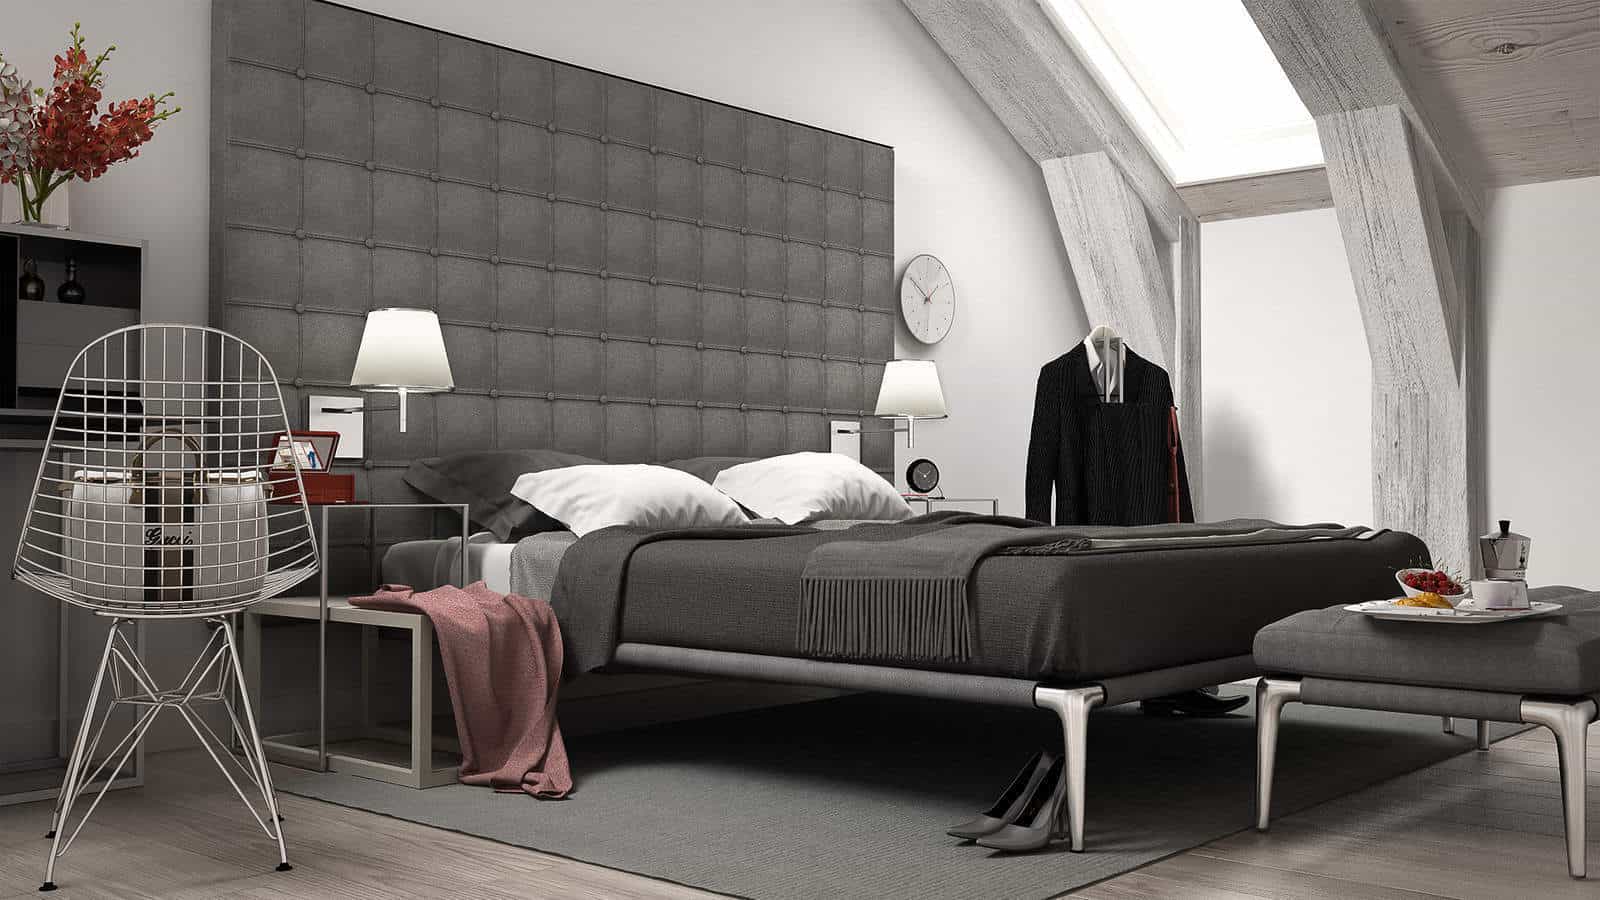 Loft minimal bedroom, interiour design. 3d illustration